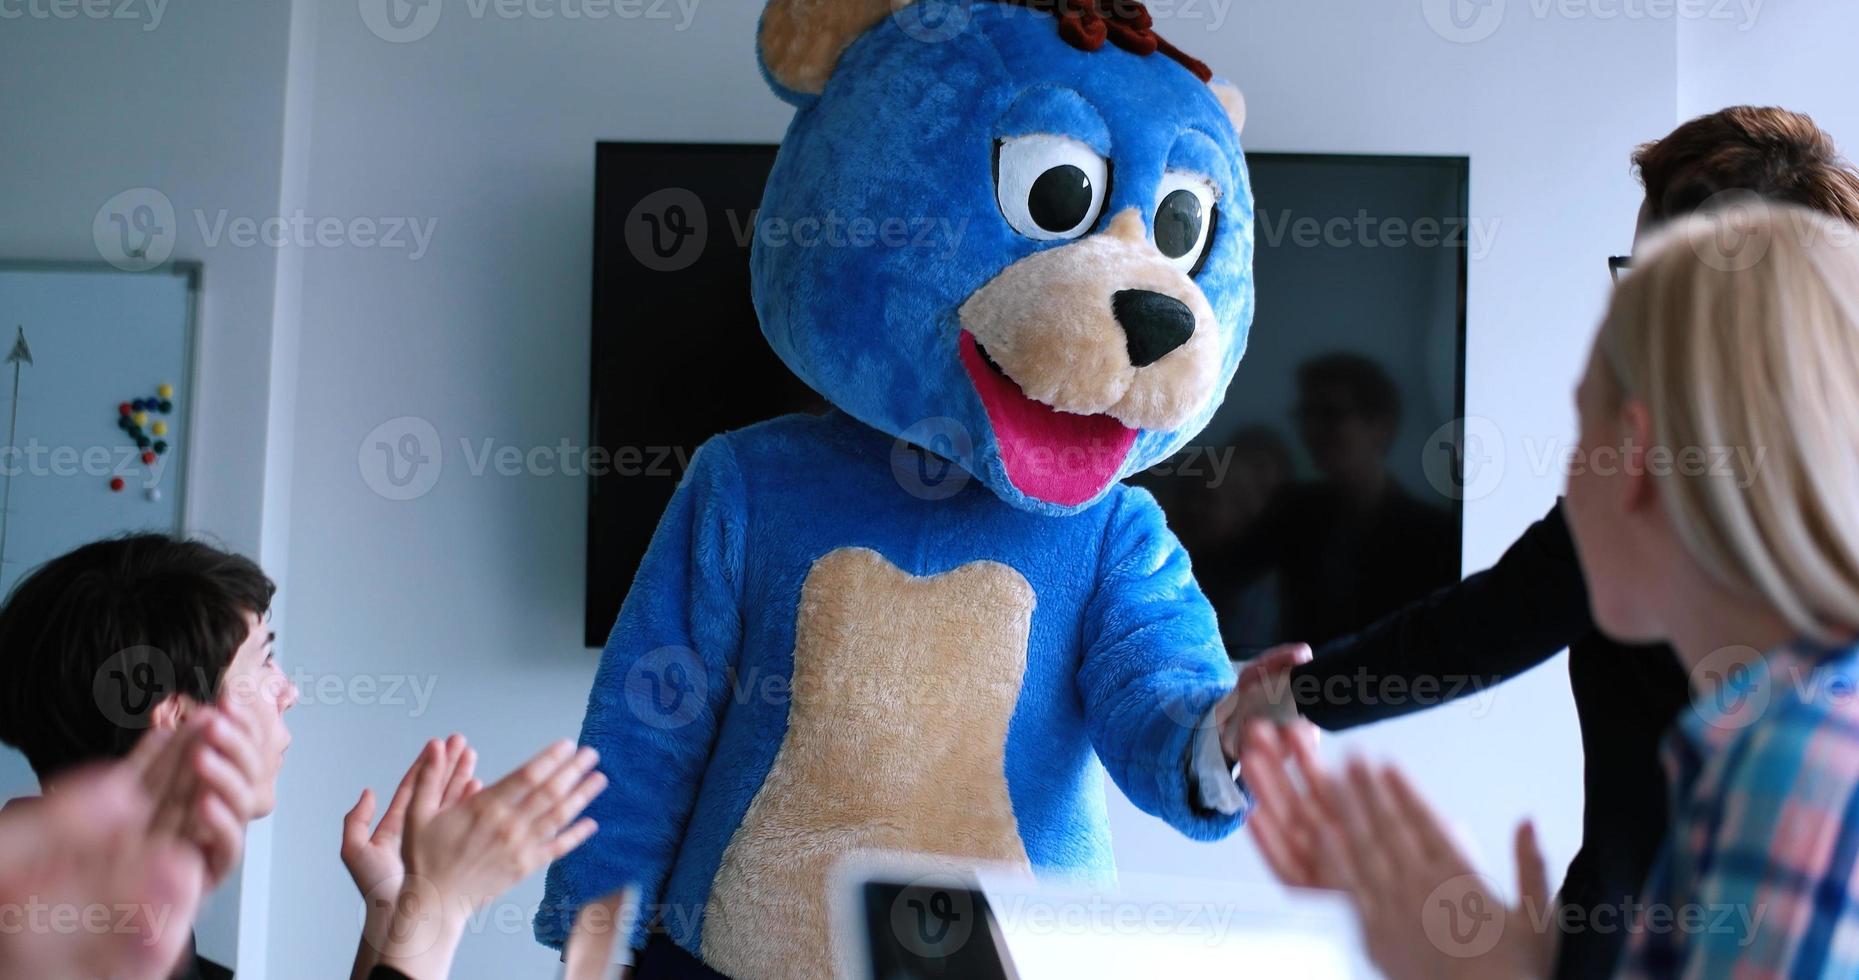 jefe vestido como oso divirtiéndose con gente de negocios en una oficina de moda foto